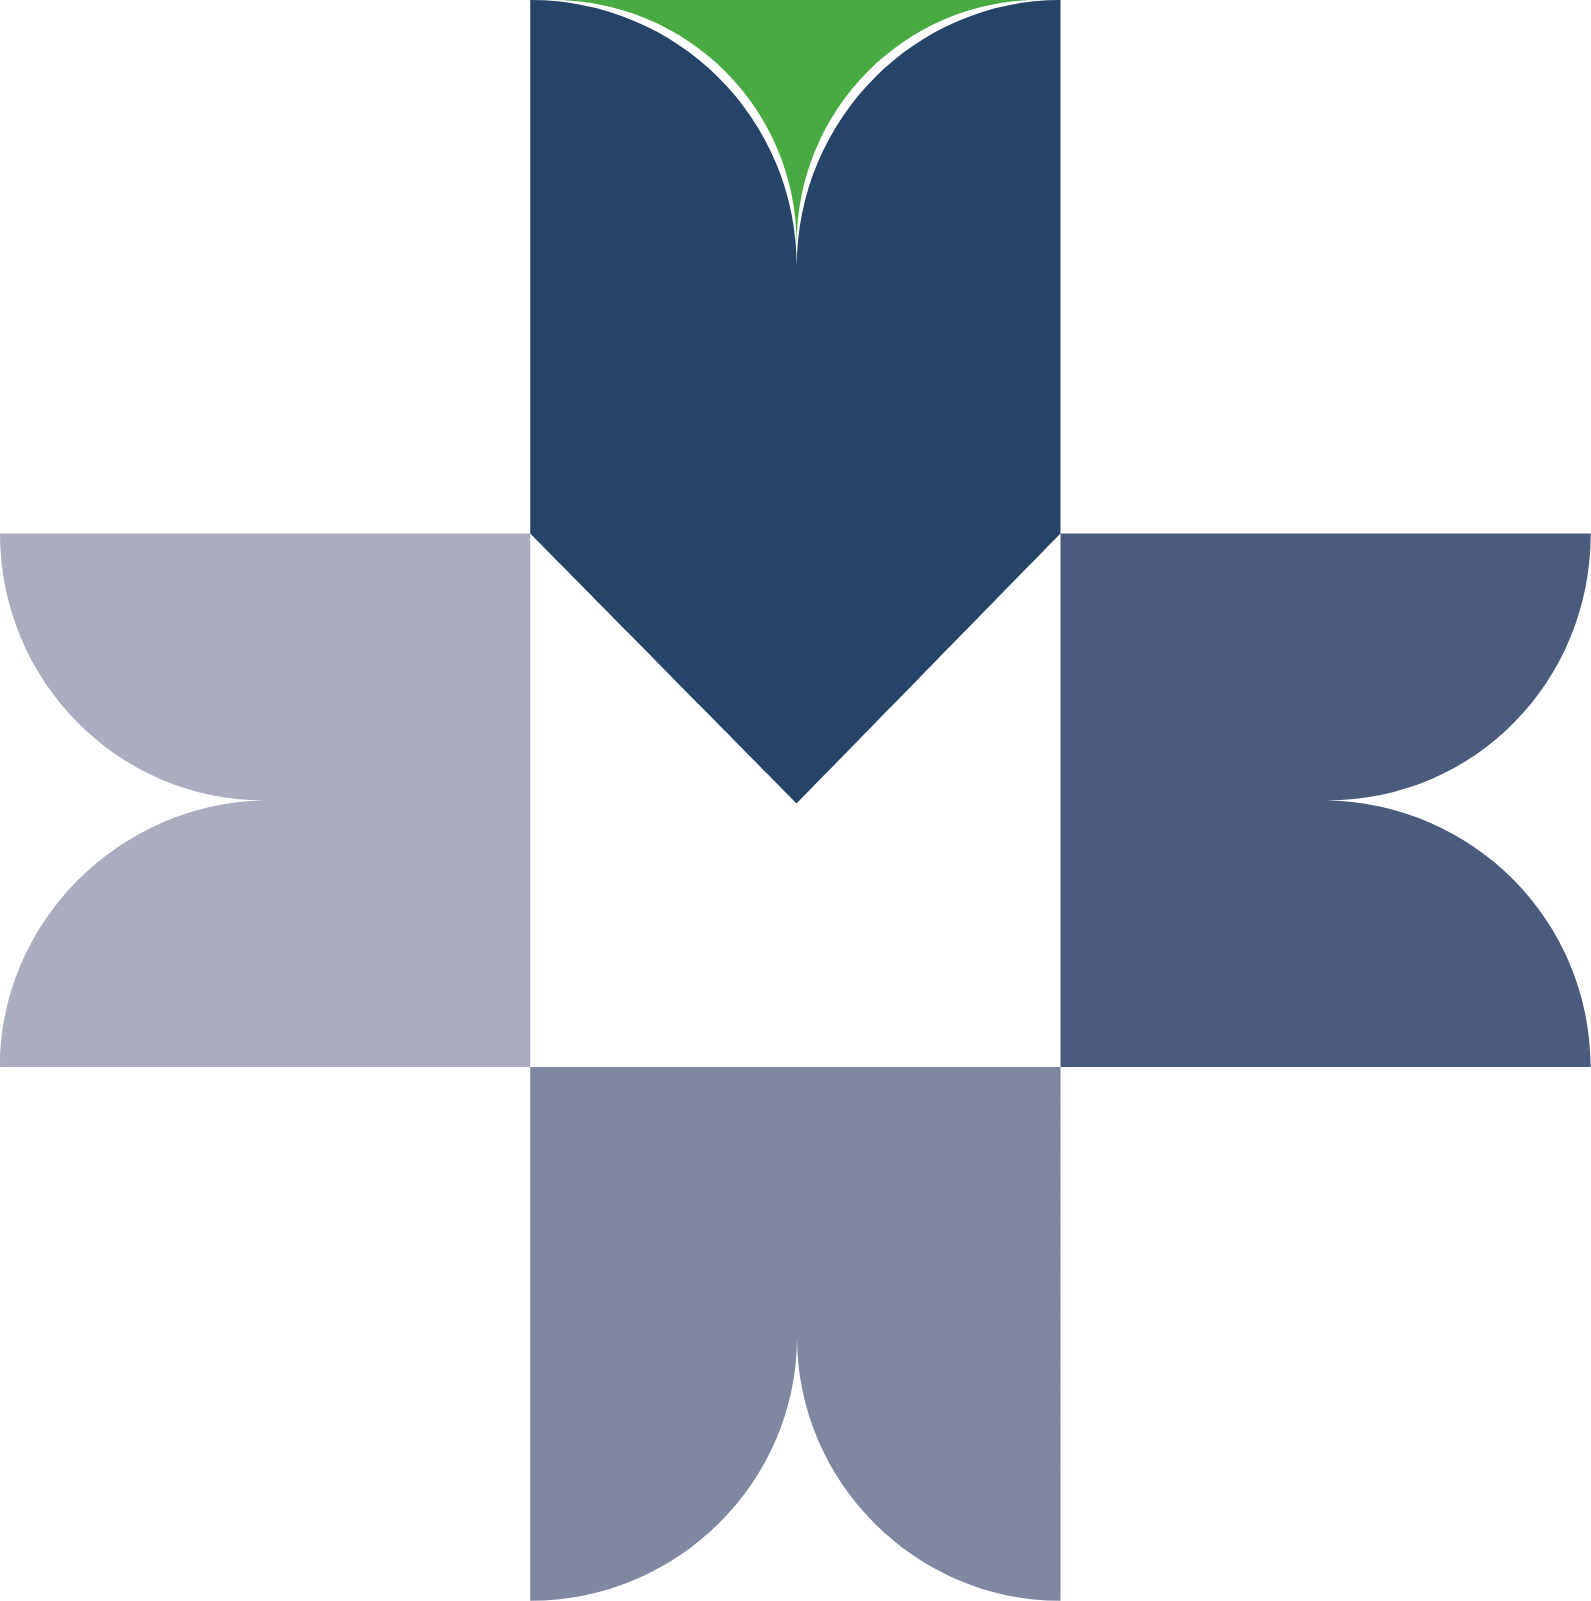 BMV (Bolsa Mexicana de Valores) logo (transparent PNG)